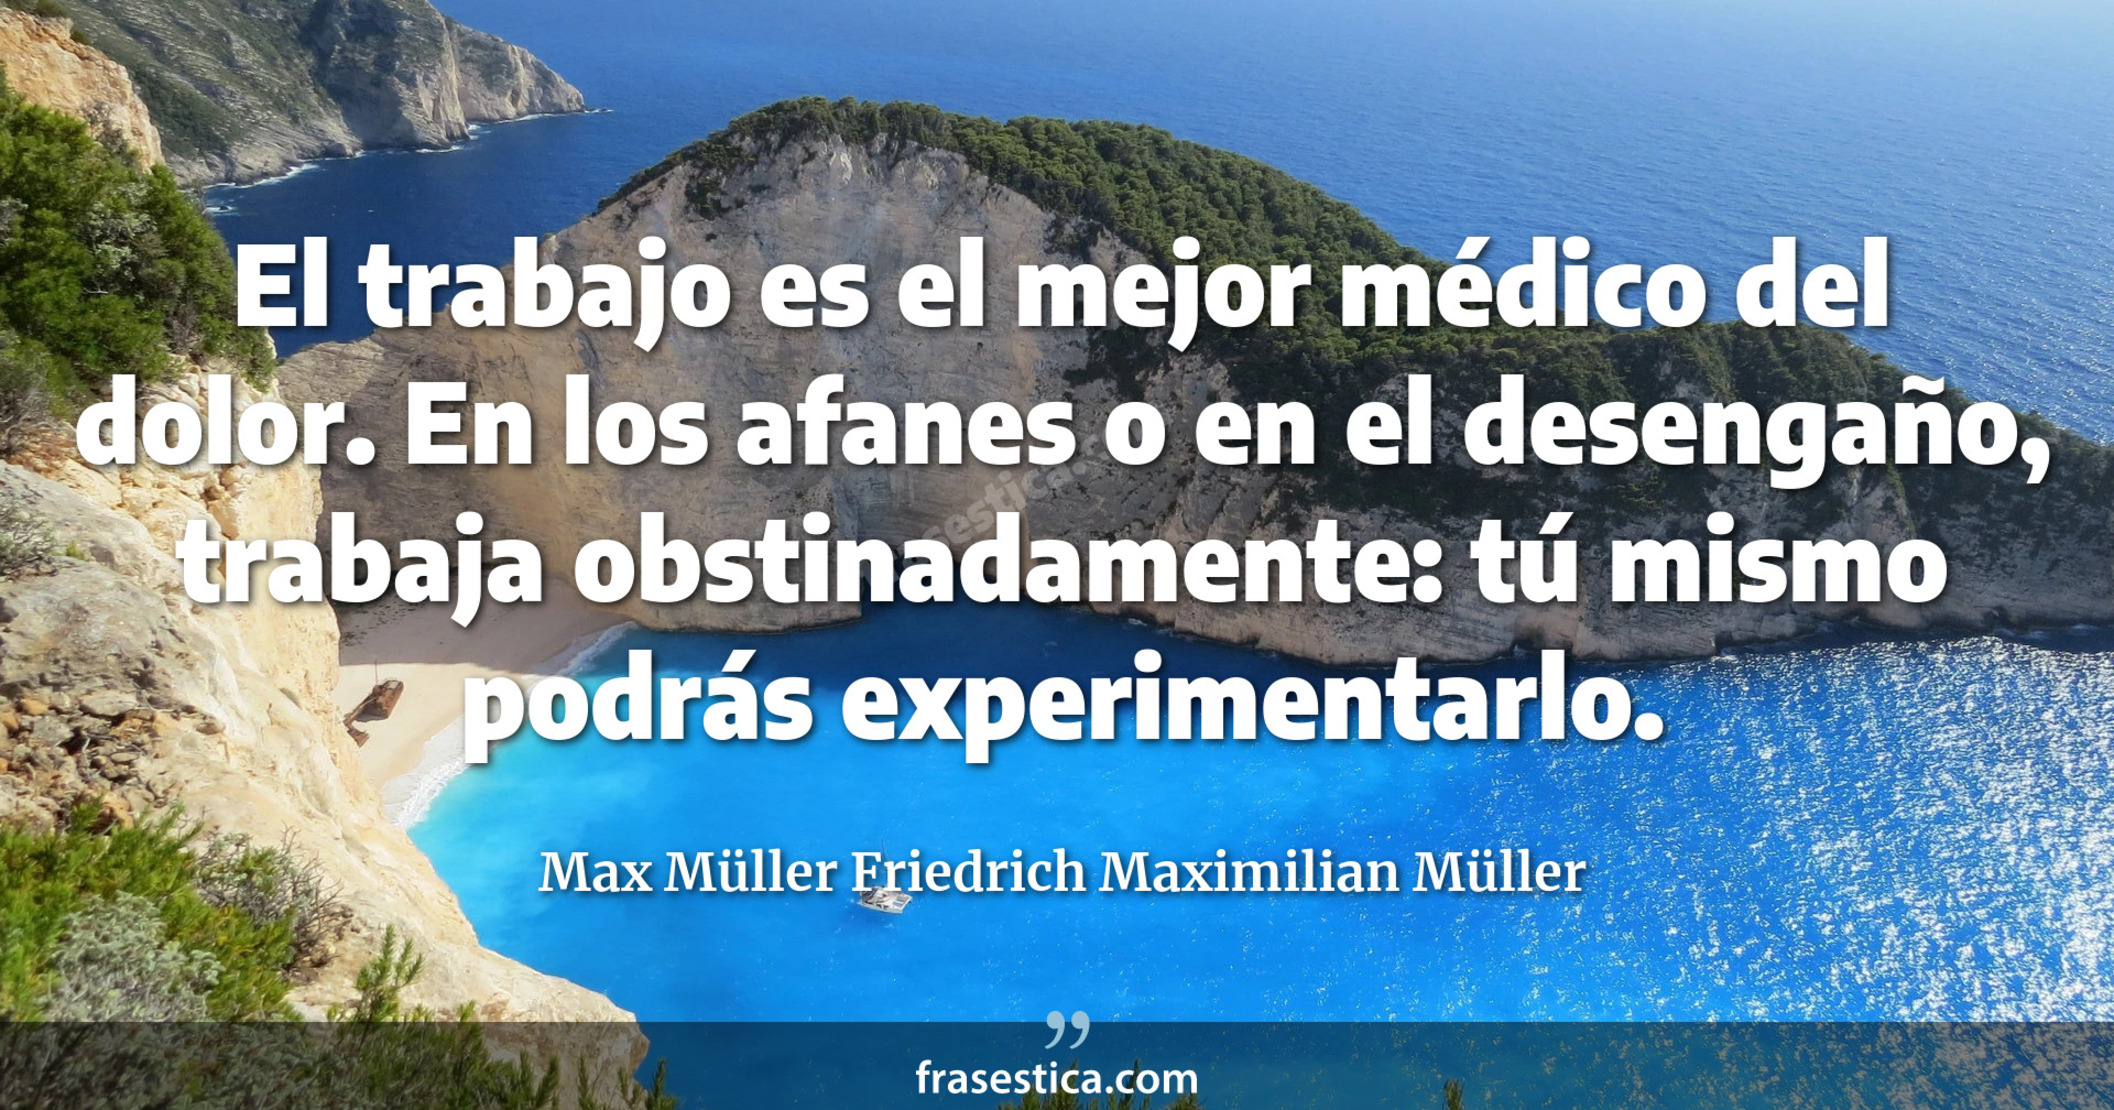 El trabajo es el mejor médico del dolor. En los afanes o en el desengaño, trabaja obstinadamente: tú mismo podrás experimentarlo. - Max Müller Friedrich Maximilian Müller